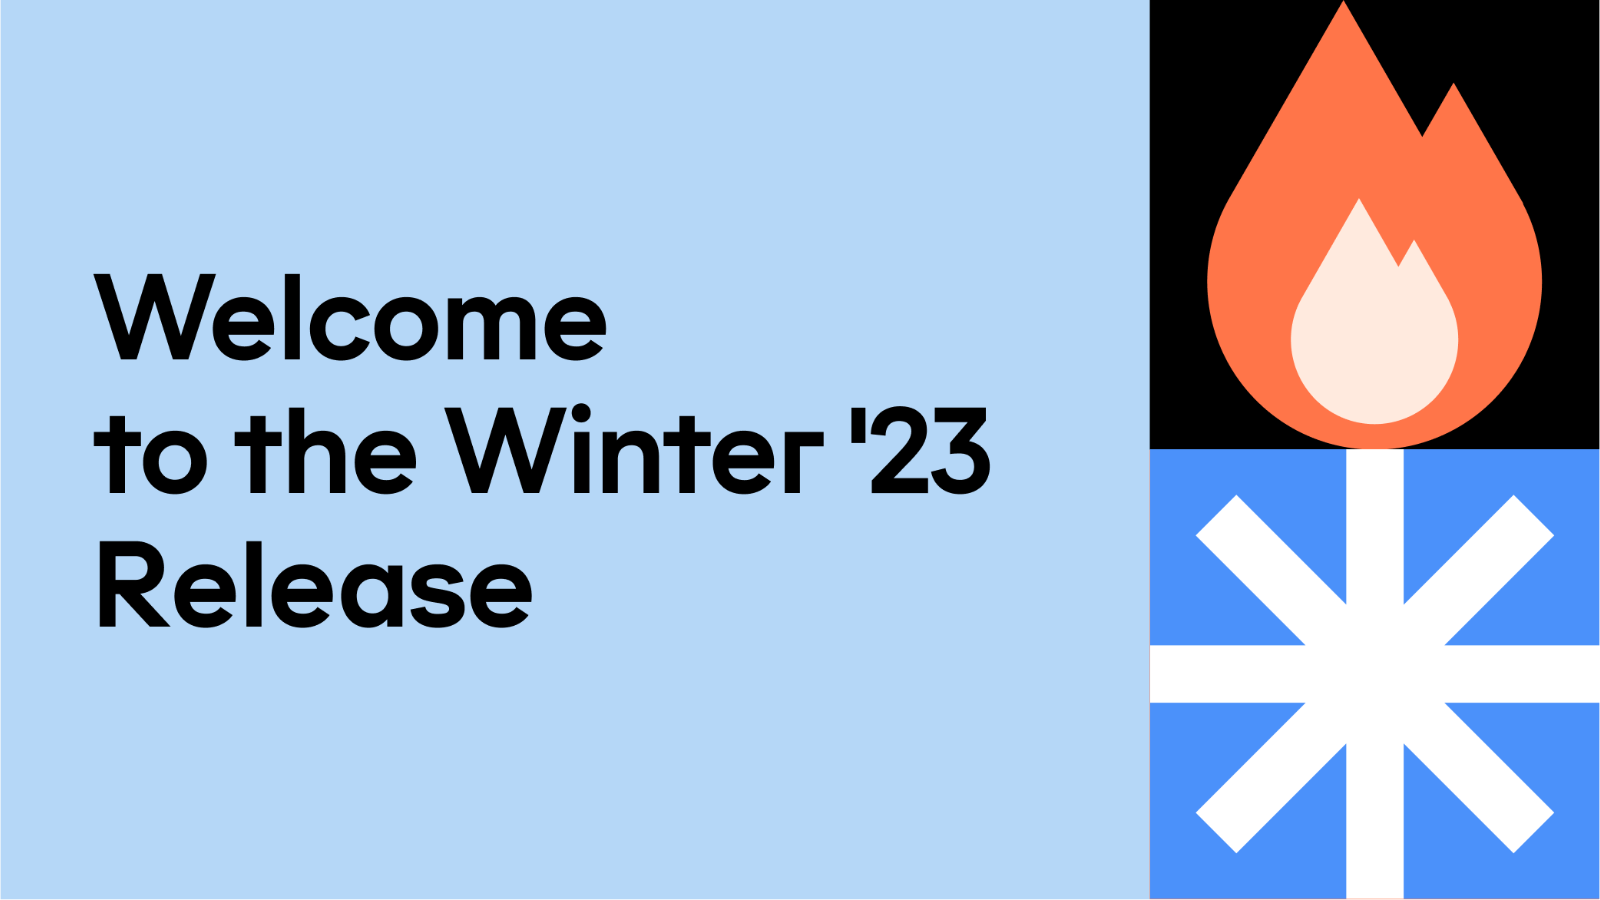 Winter '23 Release